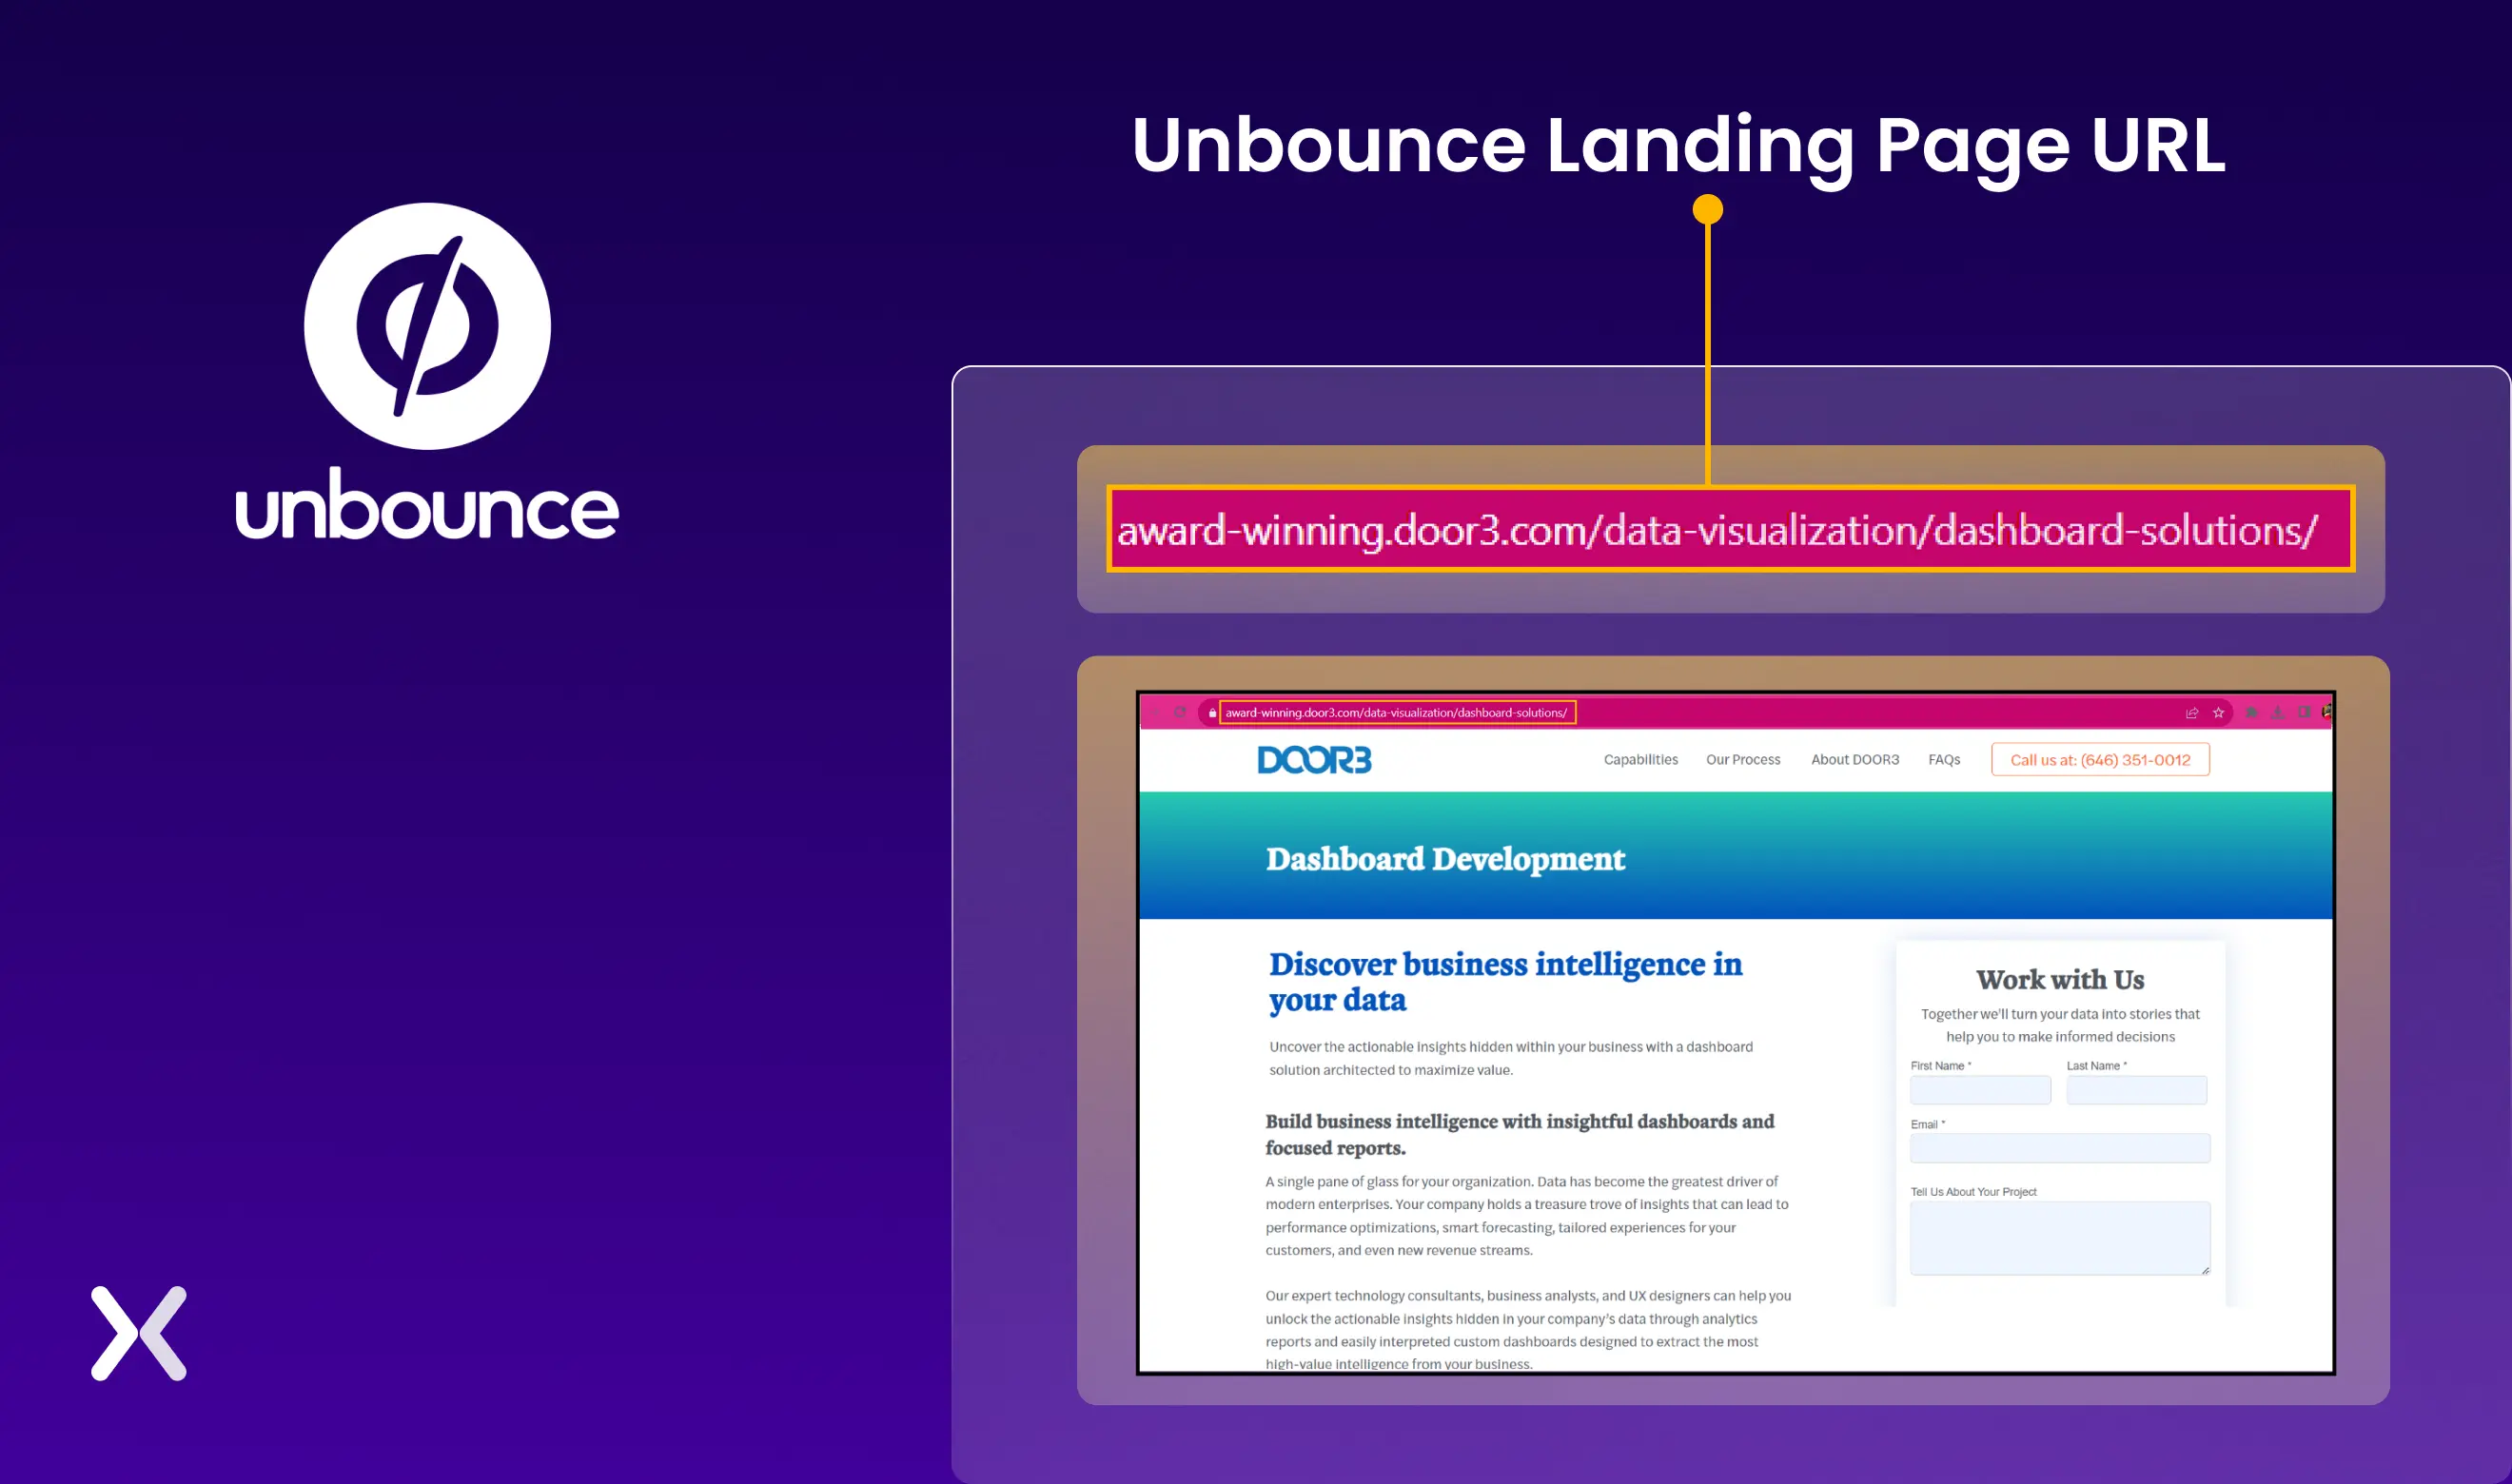 Unbounce-landing-page-url.webp